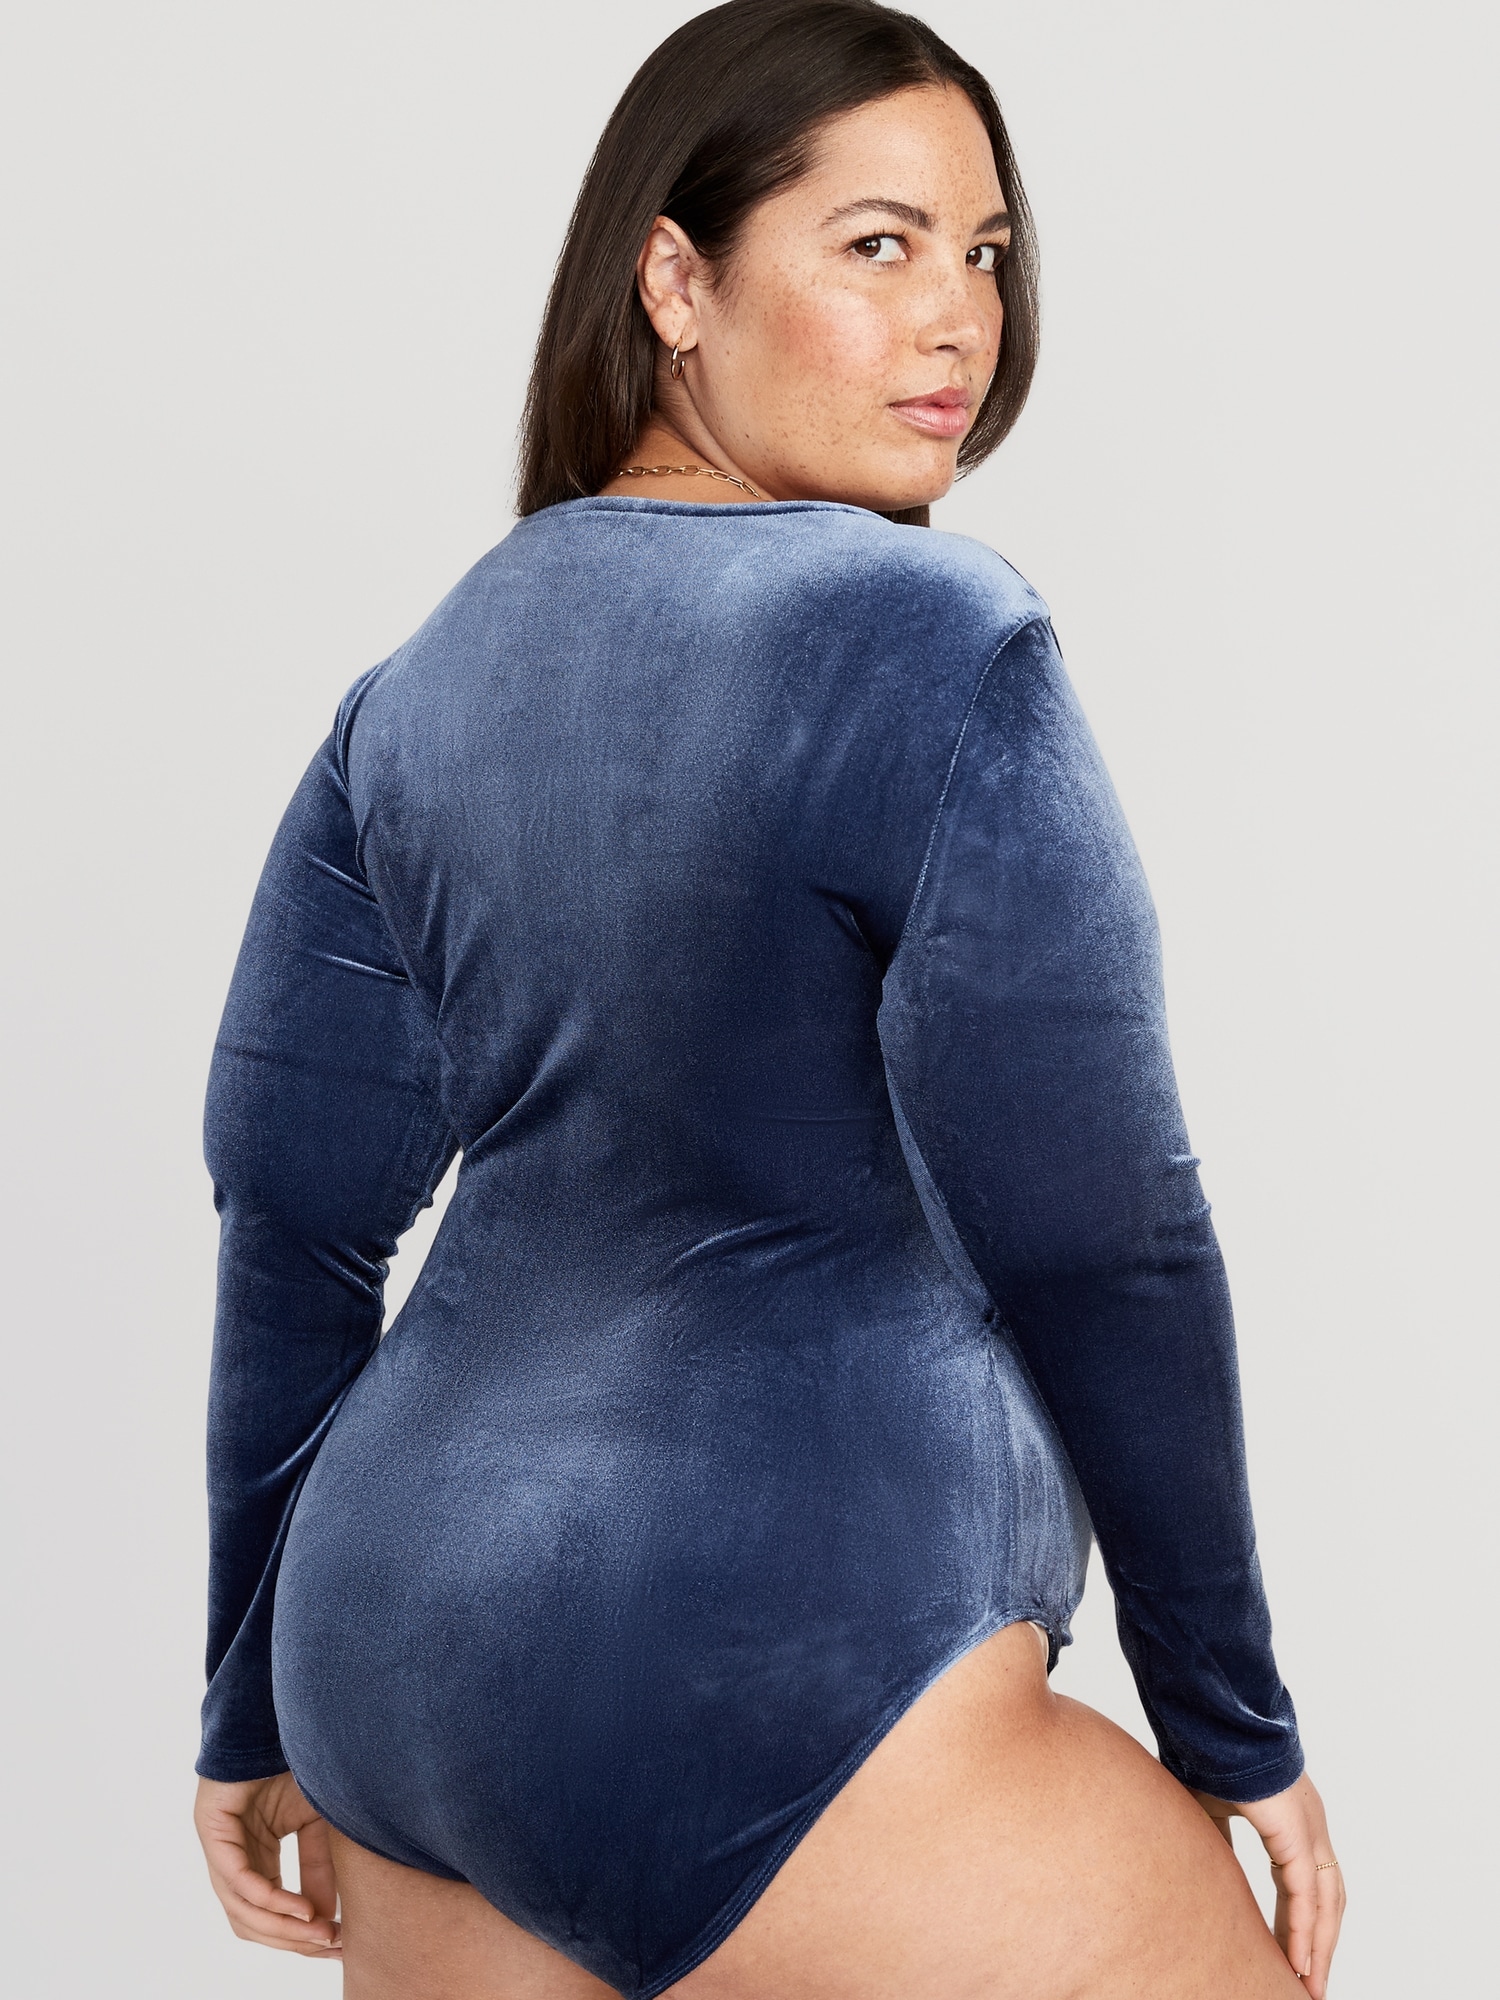 SABRINA Navy Blue Velvet Bodysuit. Blue Velvet Top. Long Sleeve Bodysuit.  Women's Bodysuit. Navy Leotard. -  Sweden